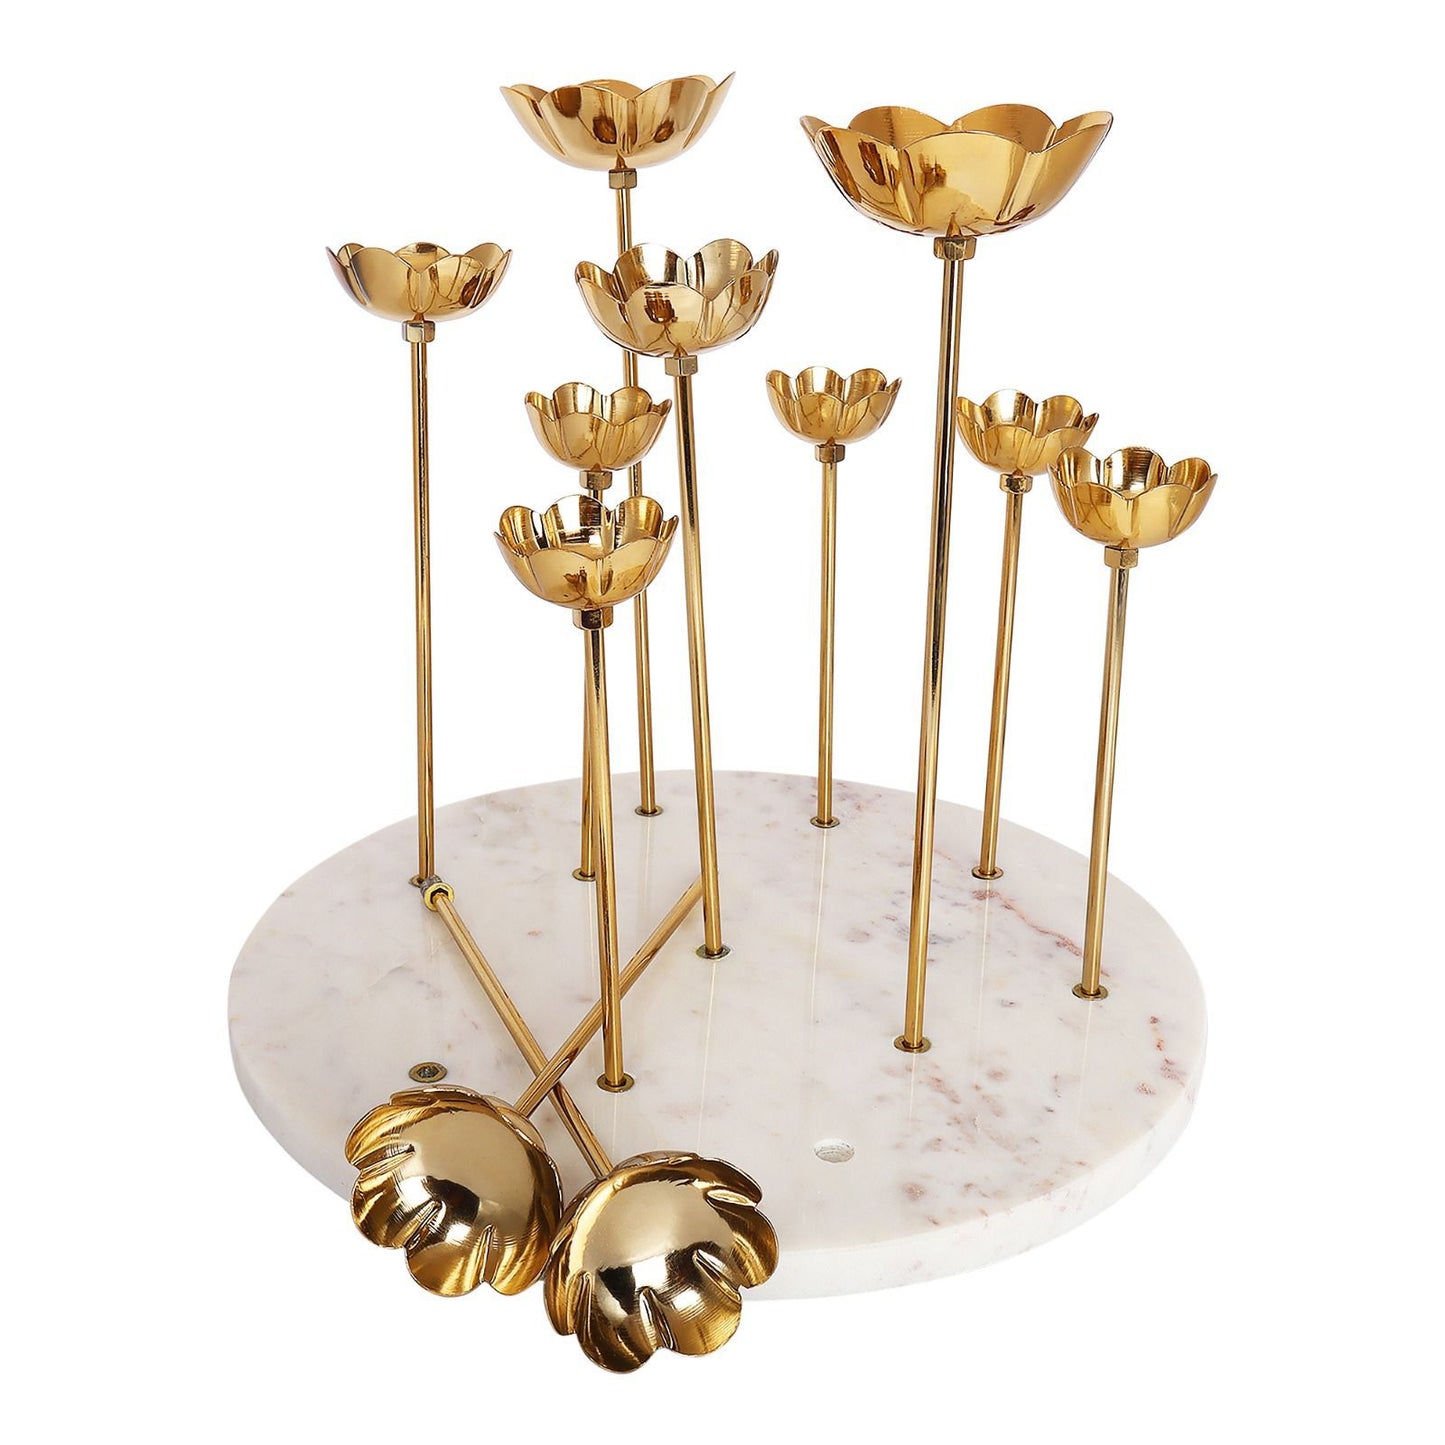 Elegance:Lotus Theme T-light Holder In Brass